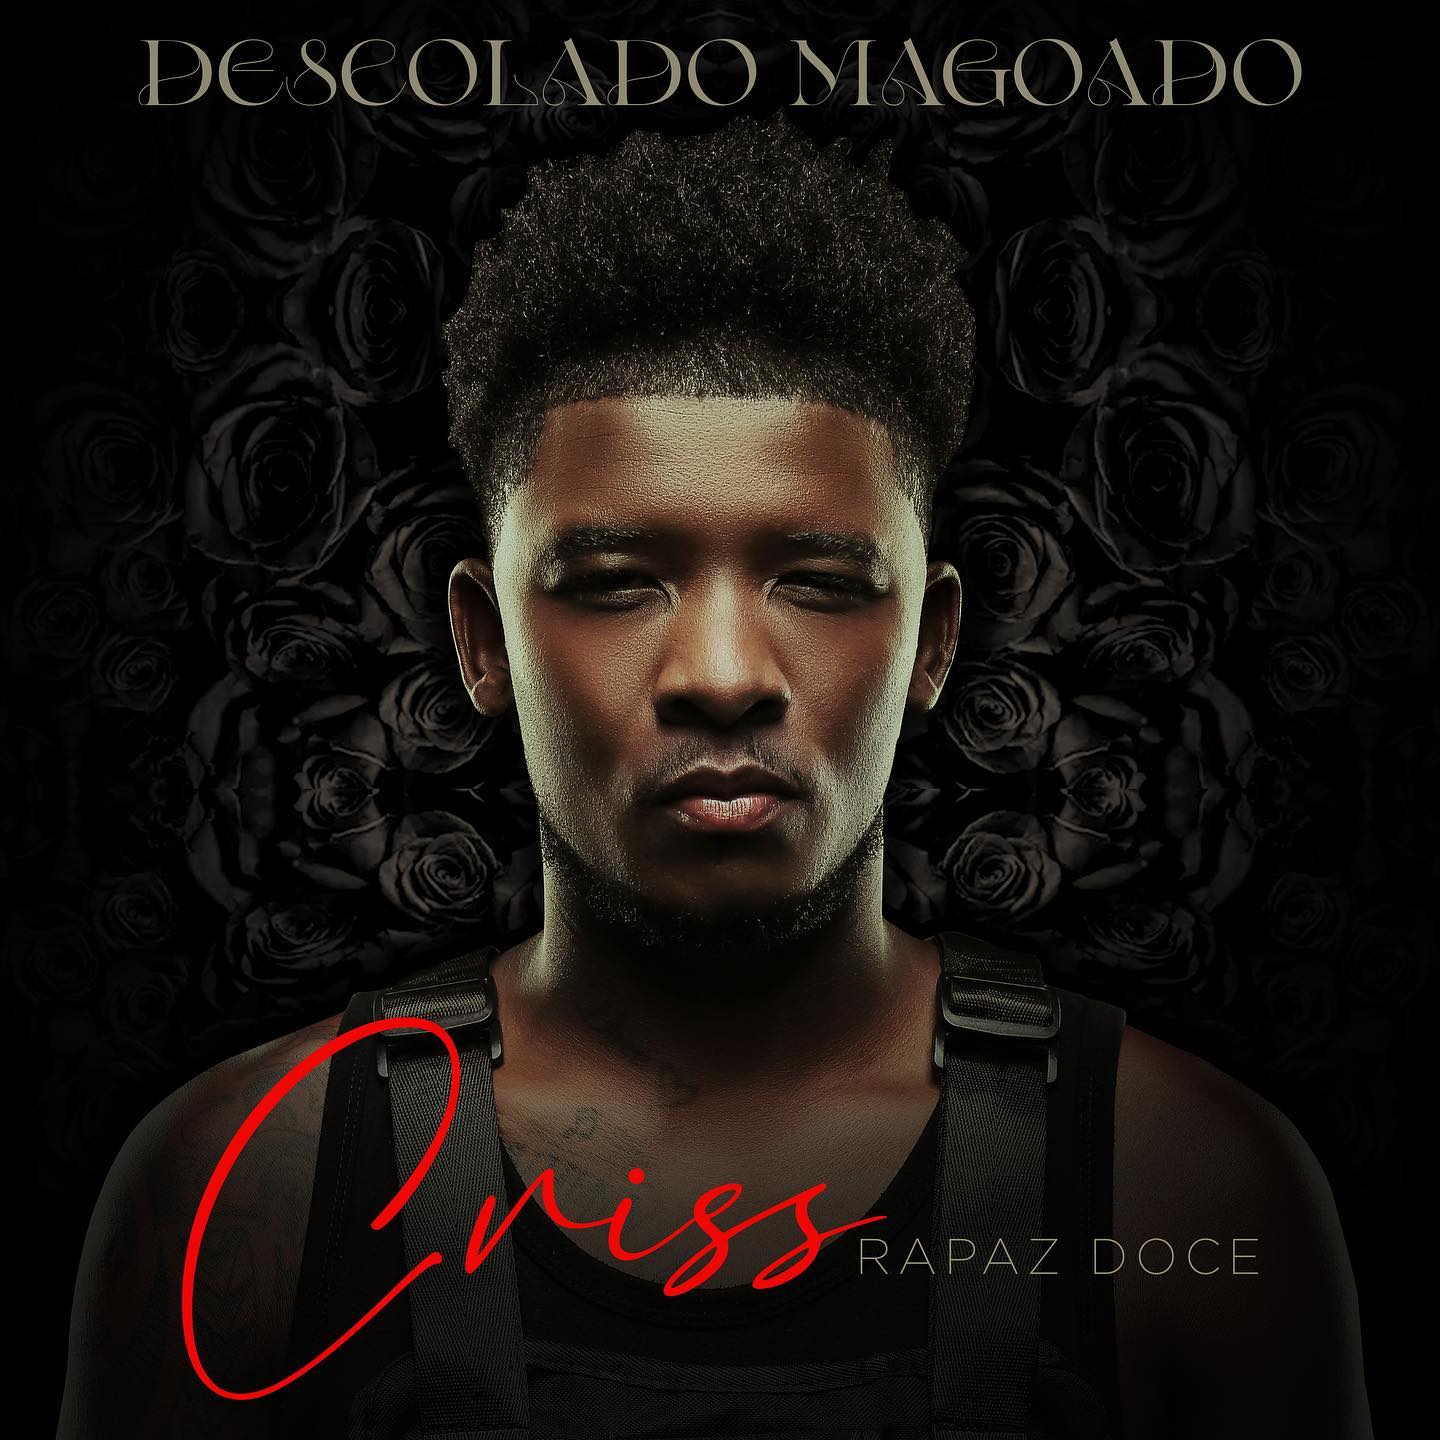 Criss – Descolado Magoado (Album)